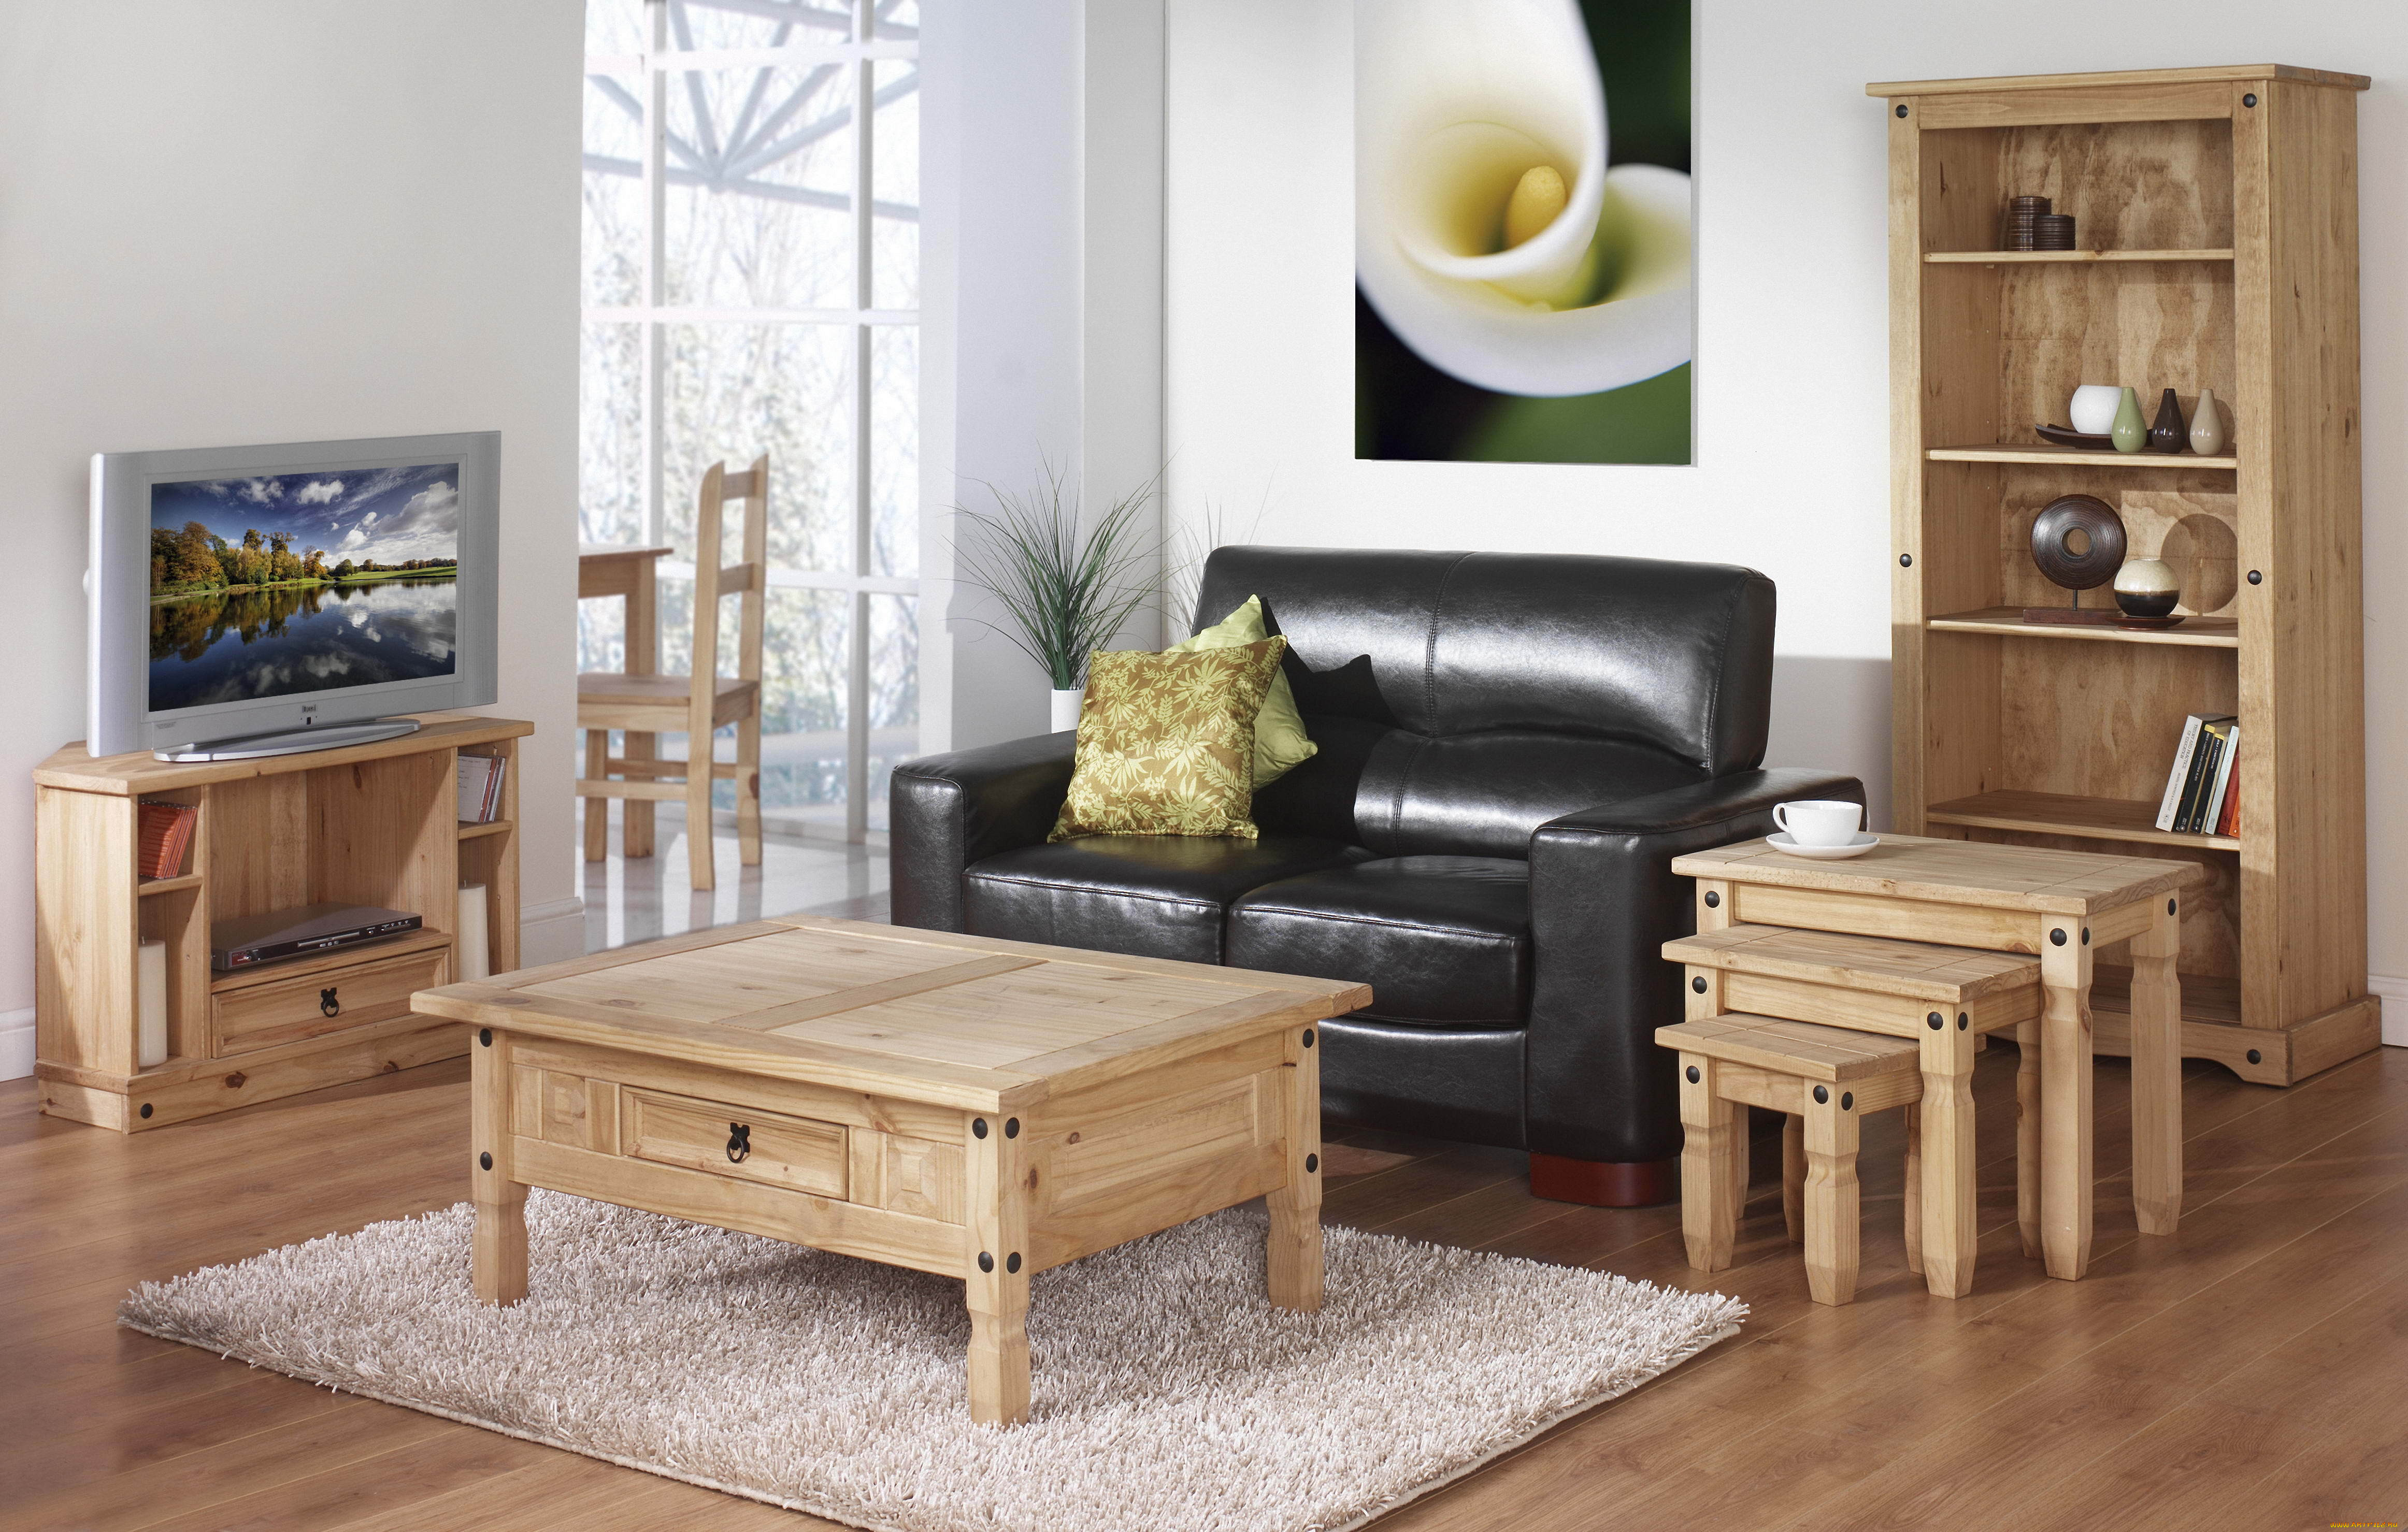 Wooden мебель. Красивая деревянная мебель. Современная деревянная мебель. Мебель из дерева в интерьере. Комната с деревянной мебелью.